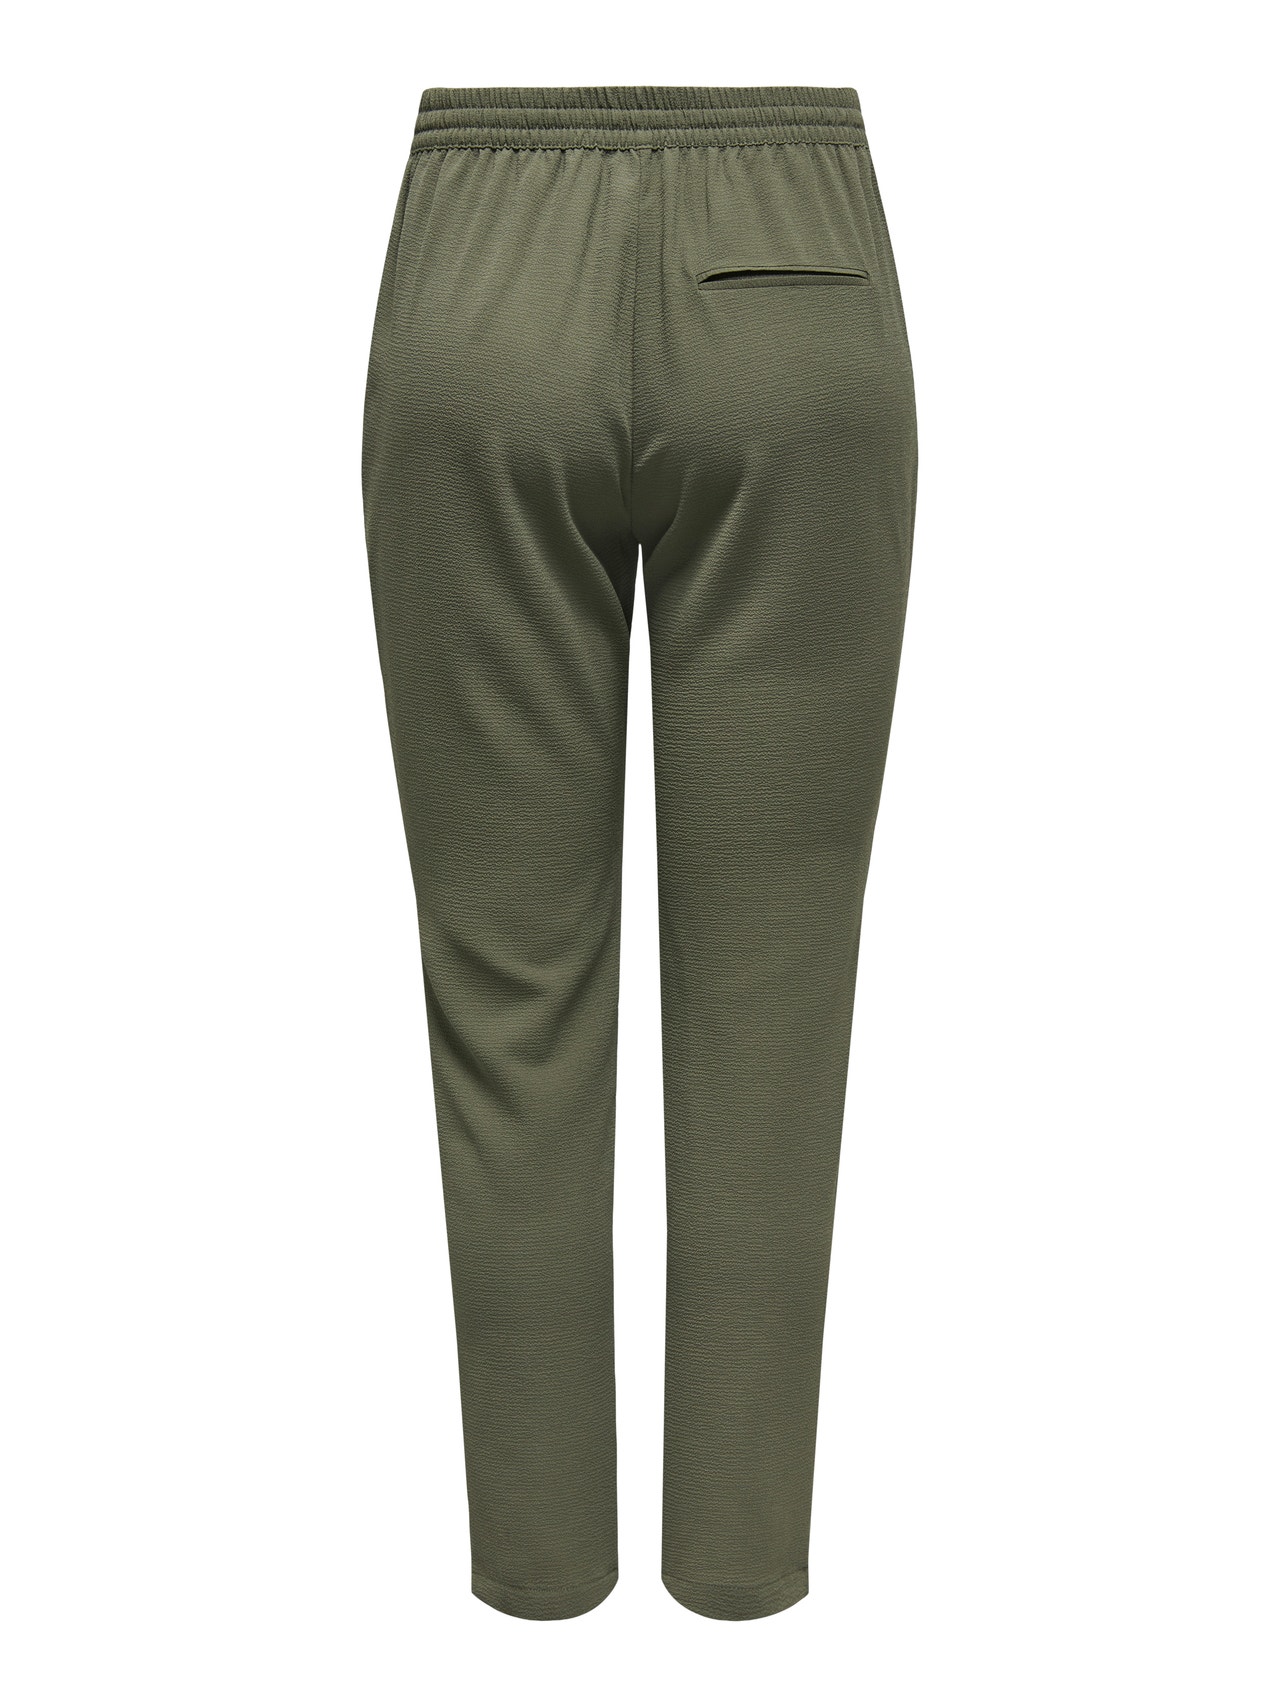 ONLY Klassiske bukser med bindebånd i taljen -Kalamata - 15222231